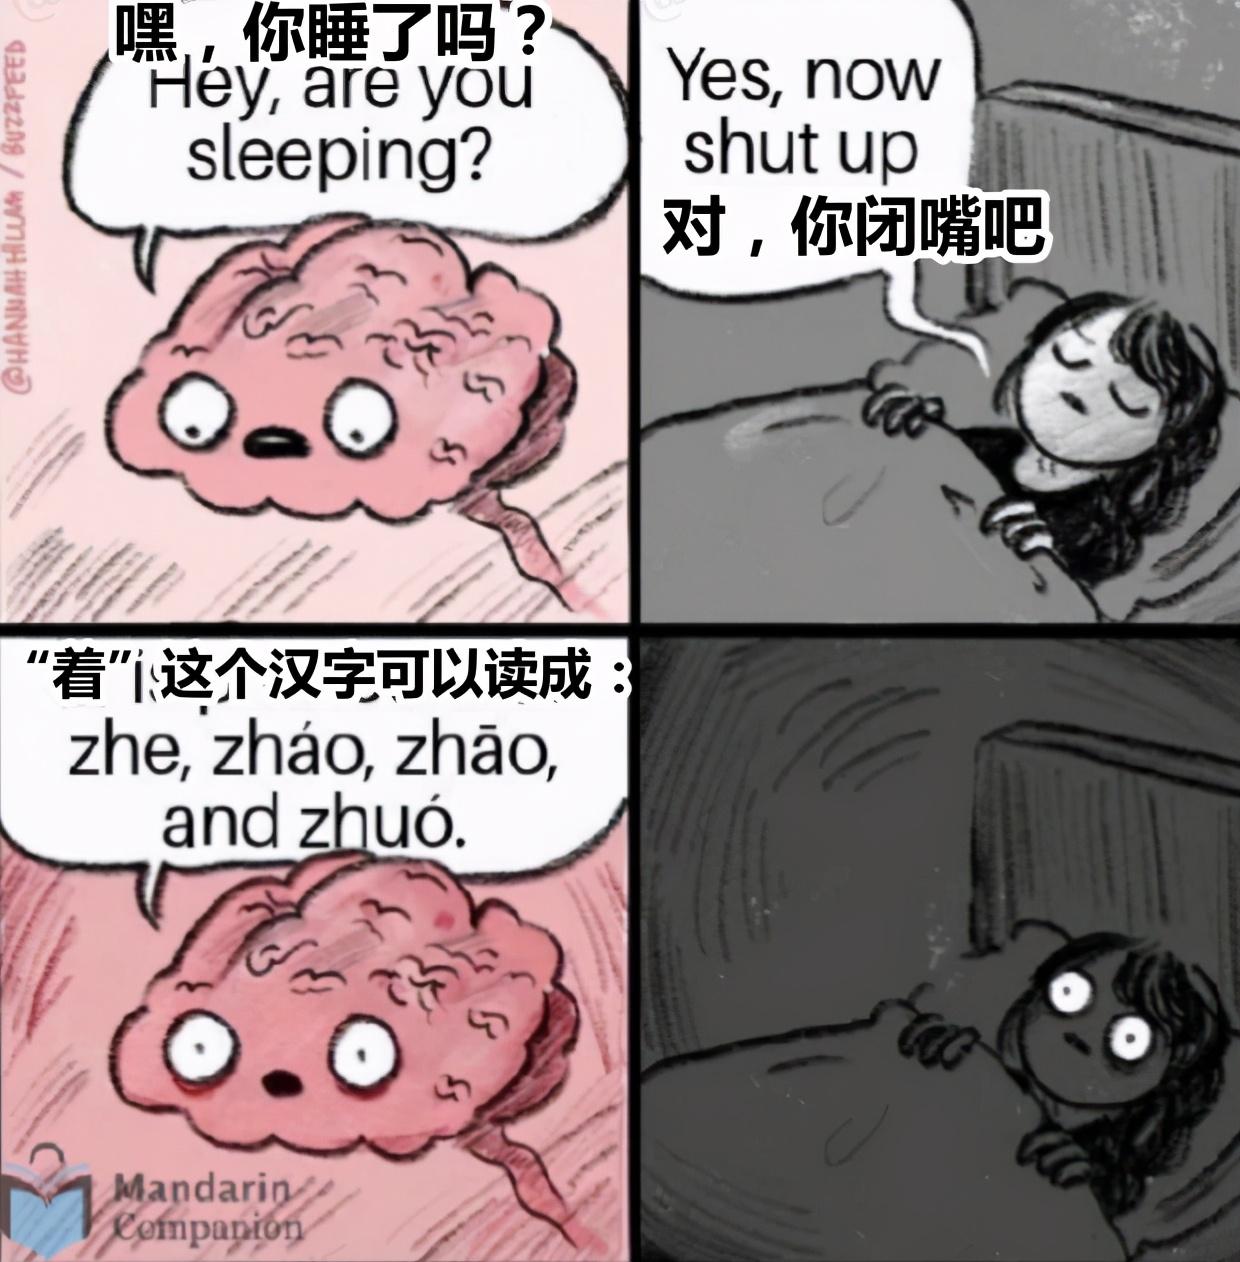 10万外国人抱怨学习汉语难。 网友：哈哈哈，感受一下学英语的痛苦吧。-第9张图片-阿卡索